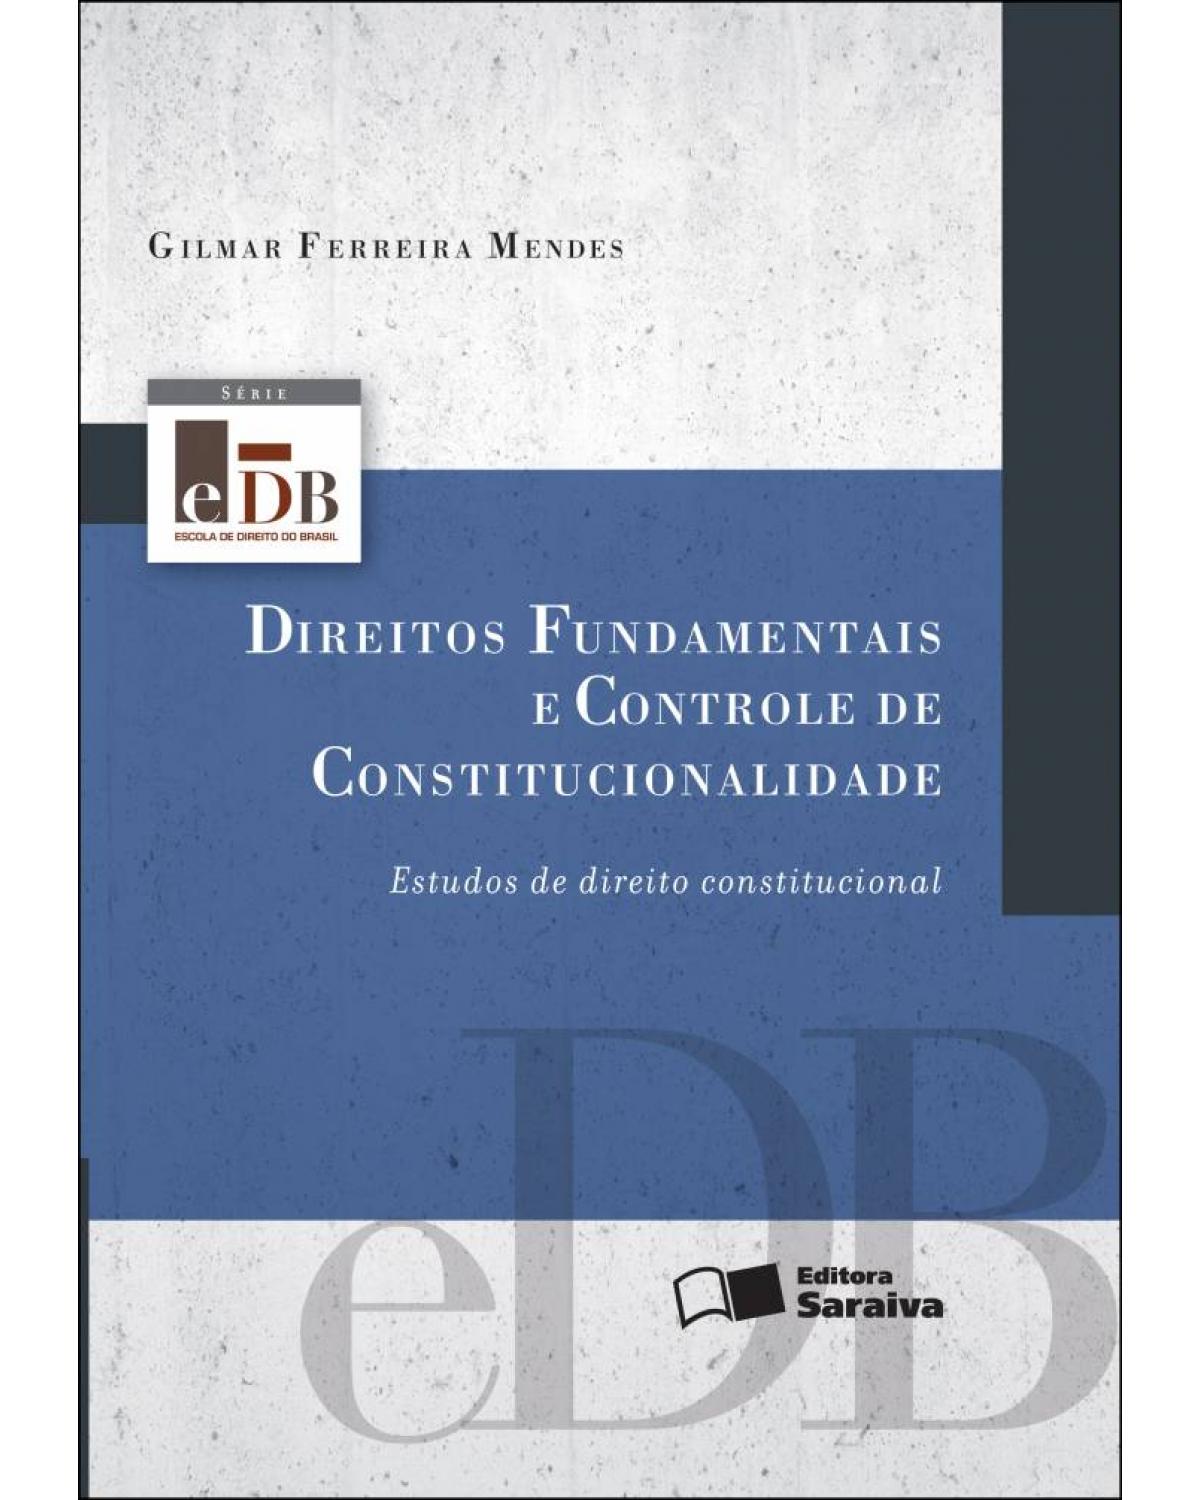 Direitos fundamentais e controle de constitucionalidade - estudos de direito constitucional - 4ª Edição | 2013